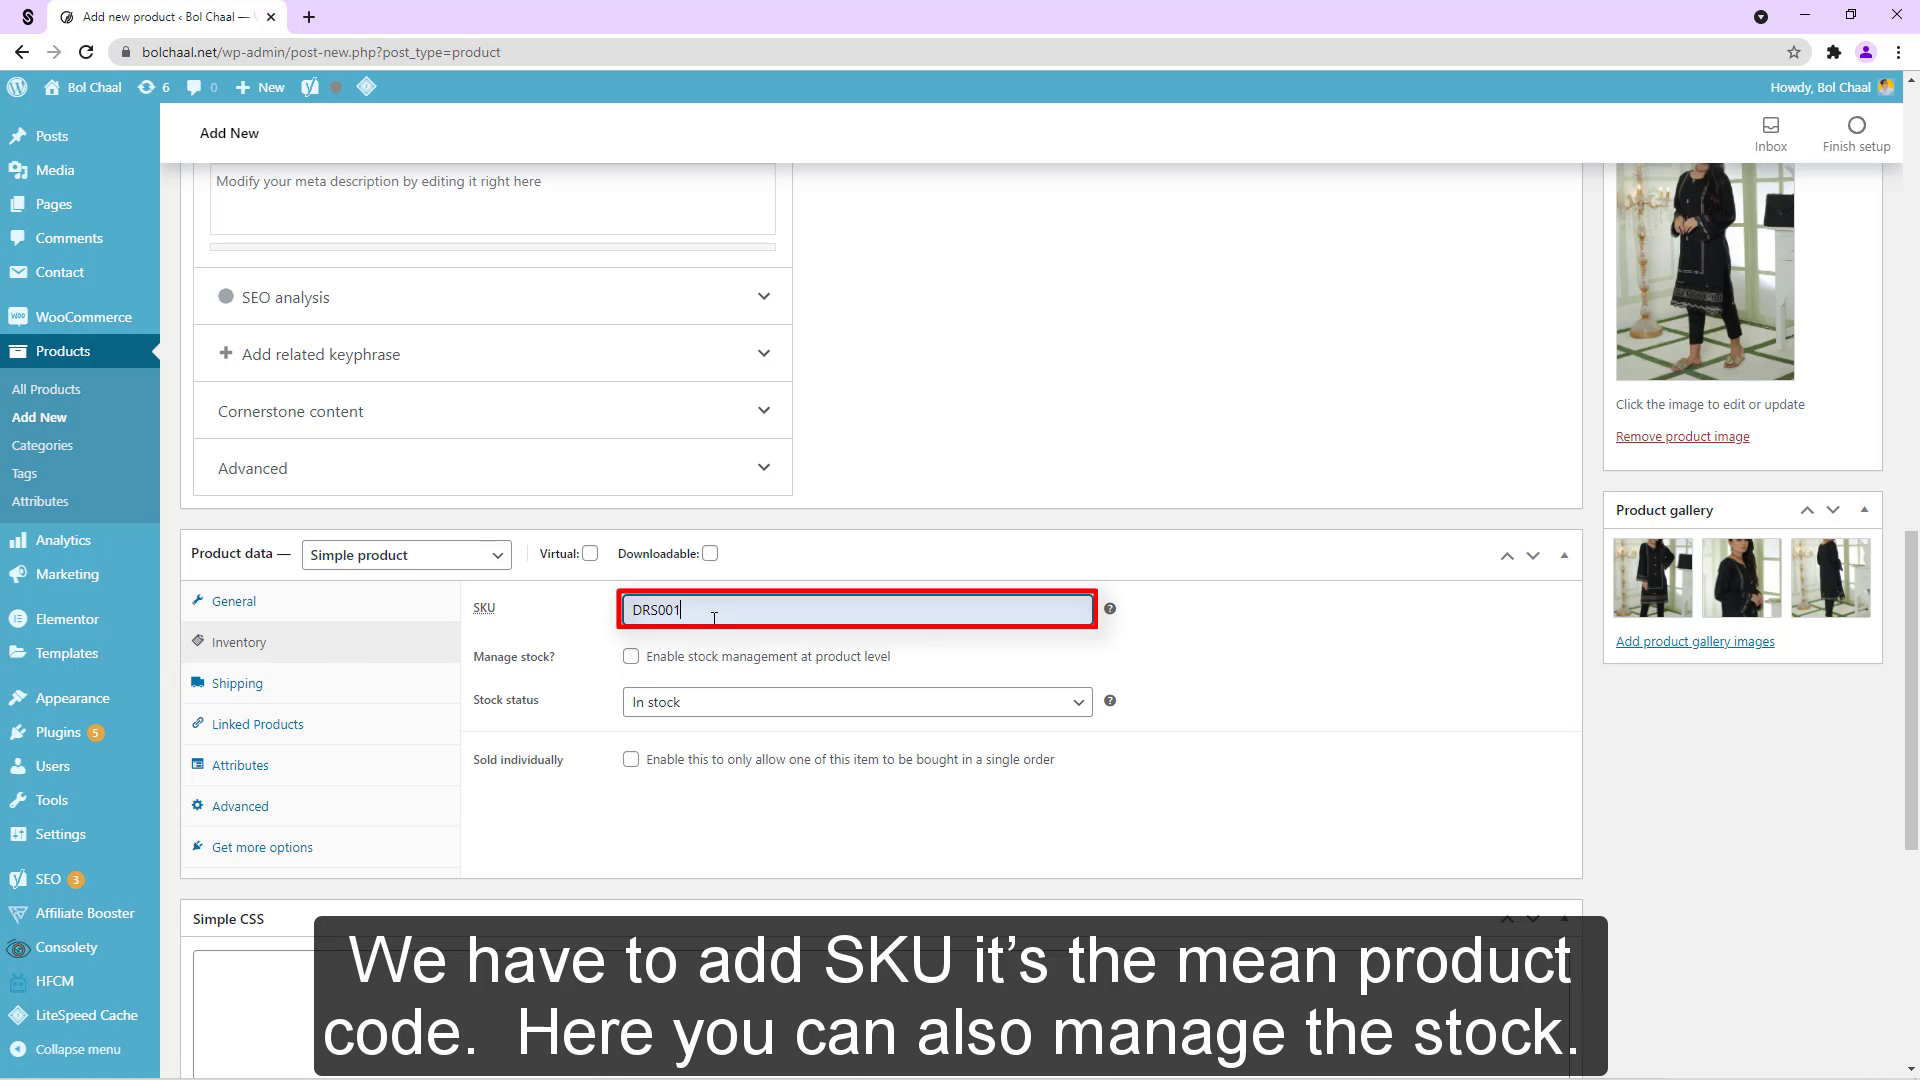 Tenemos que agregar SKU es el código de producto medio